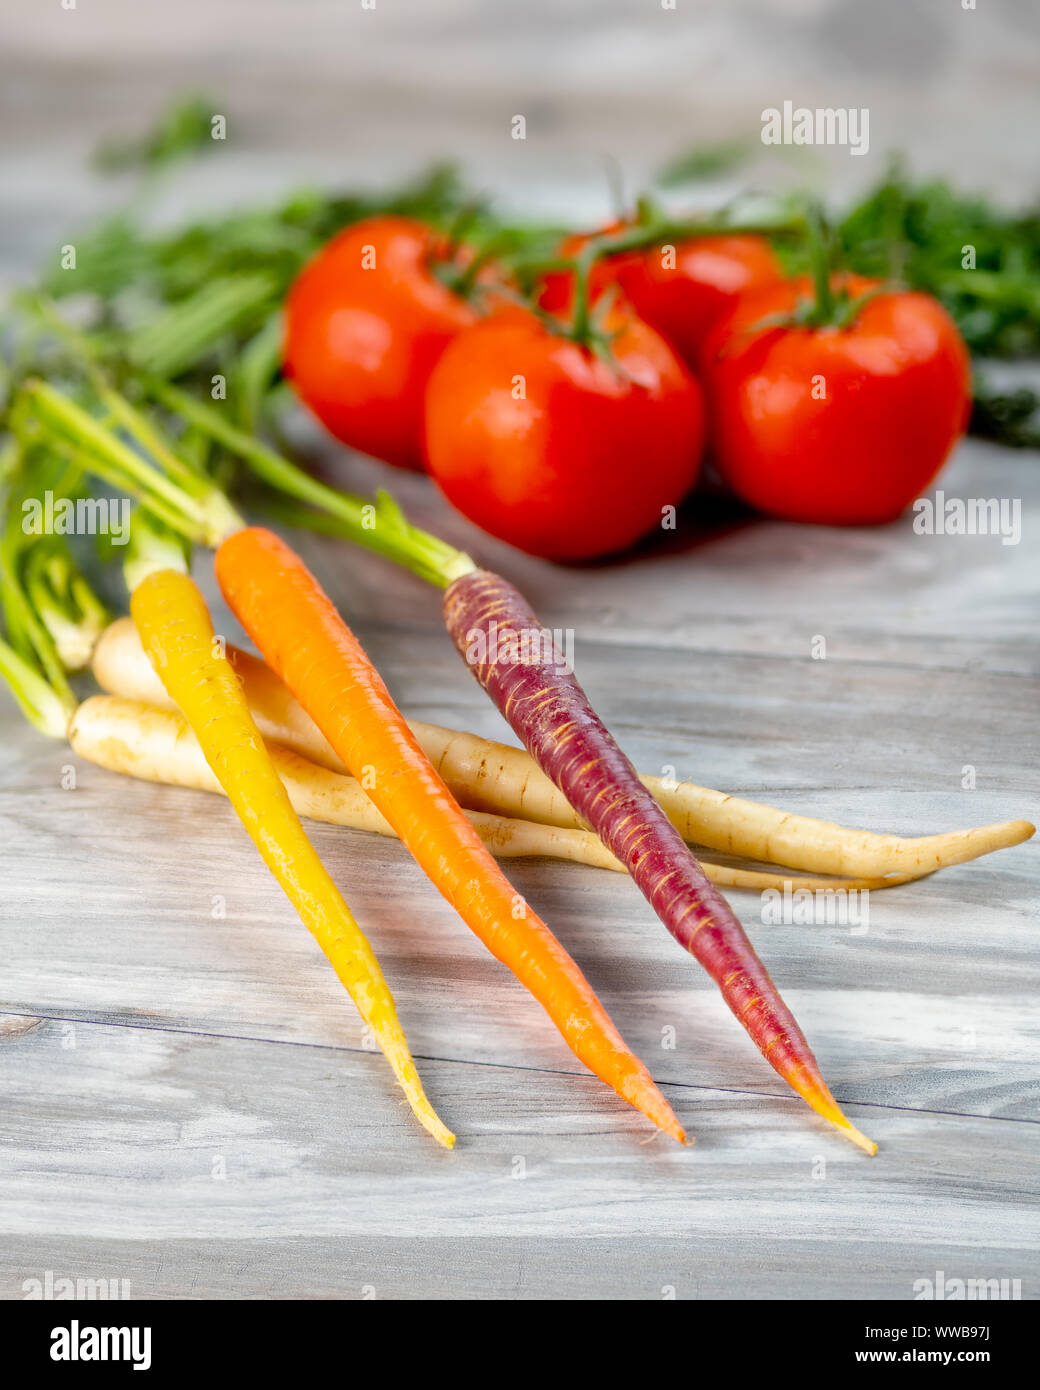 Deliciosas verduras de zanahorias y tomates sobre una tabla de madera Foto de stock